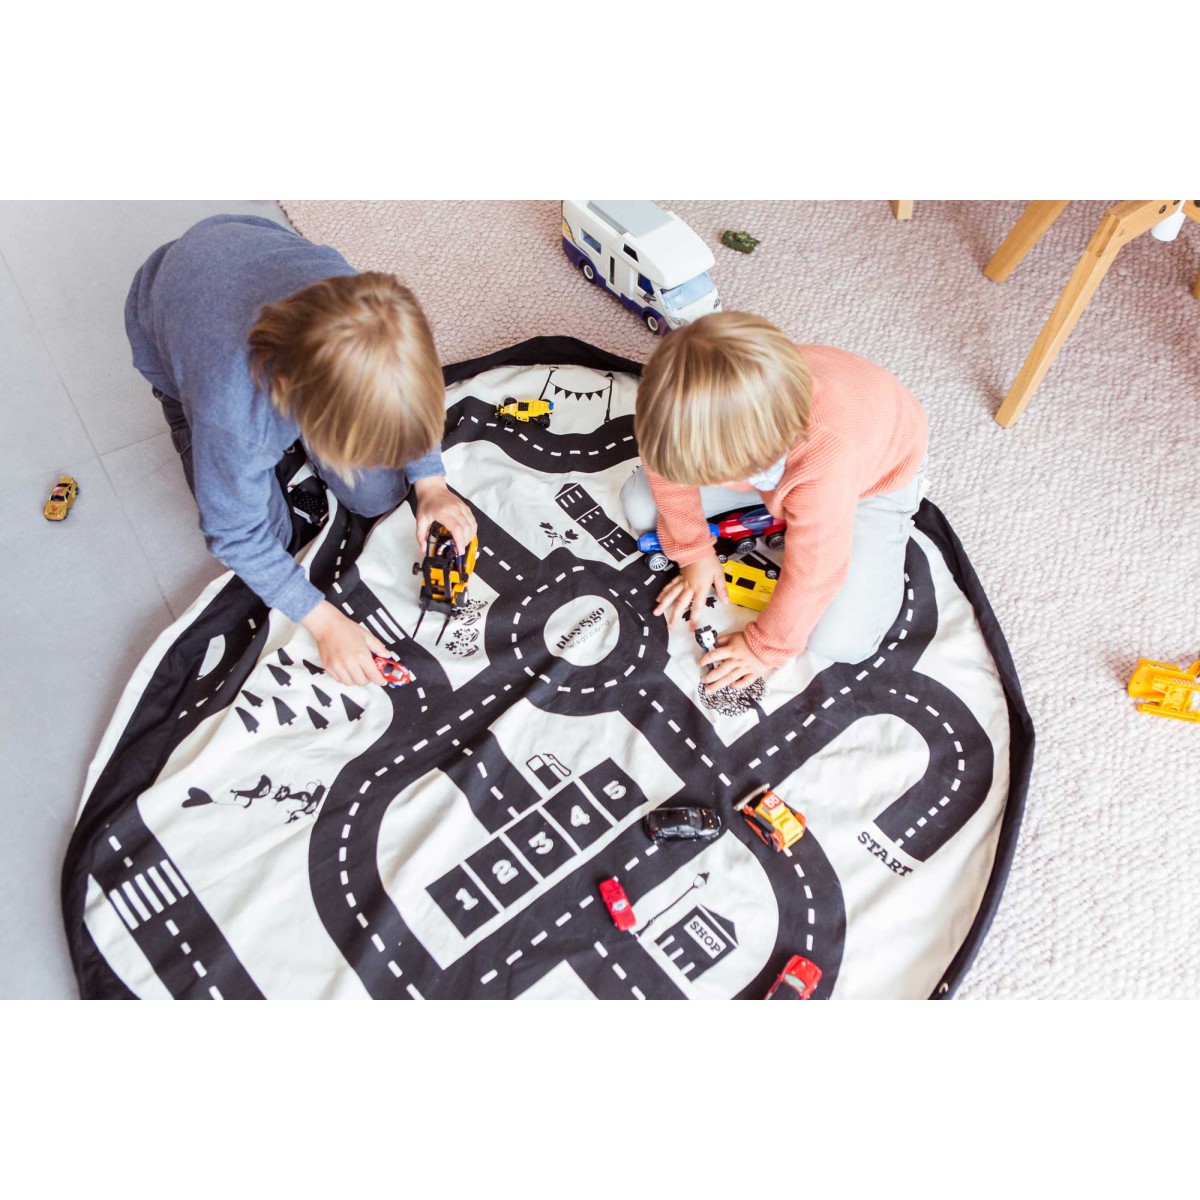 Play & Go 2 in 1 Speelgoedkleed en - roadmap kopen? - MyKidsToys